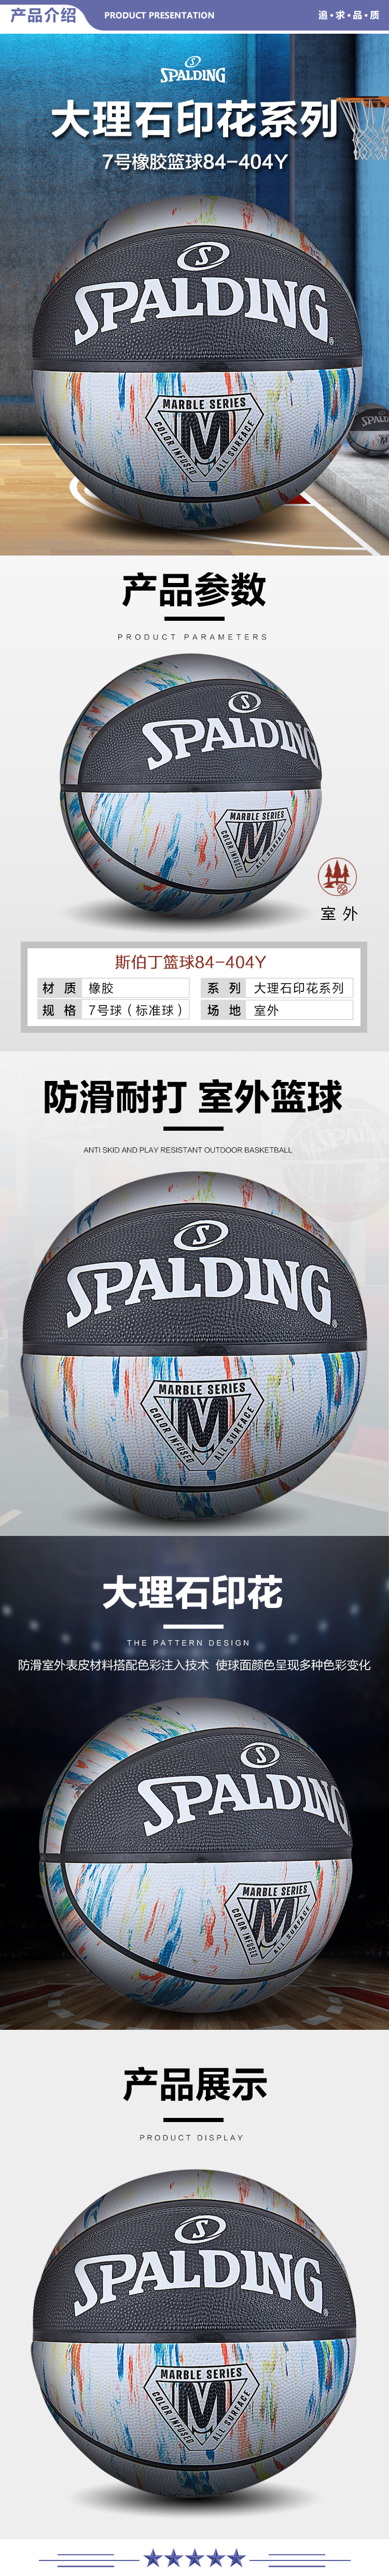 斯伯丁 84-404Y SPALDING大理石印花系列耐磨经典花球7号橡胶篮球黑白色 2.jpg